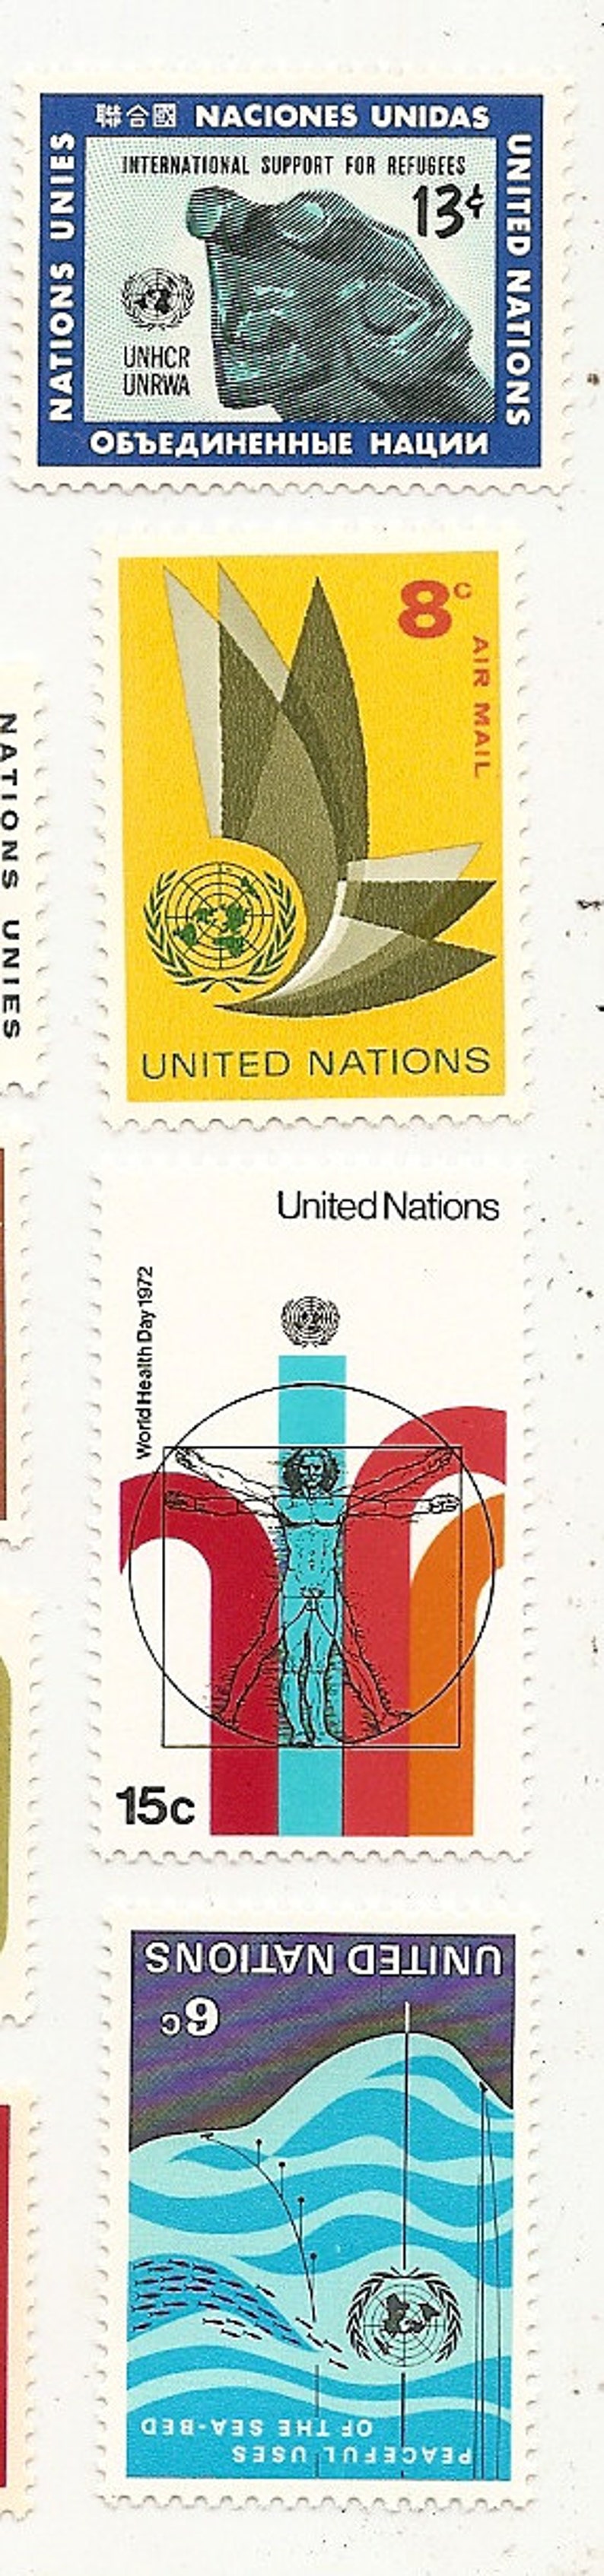 95 Vintage Unused UNITED NATIONS STAMPS image 2